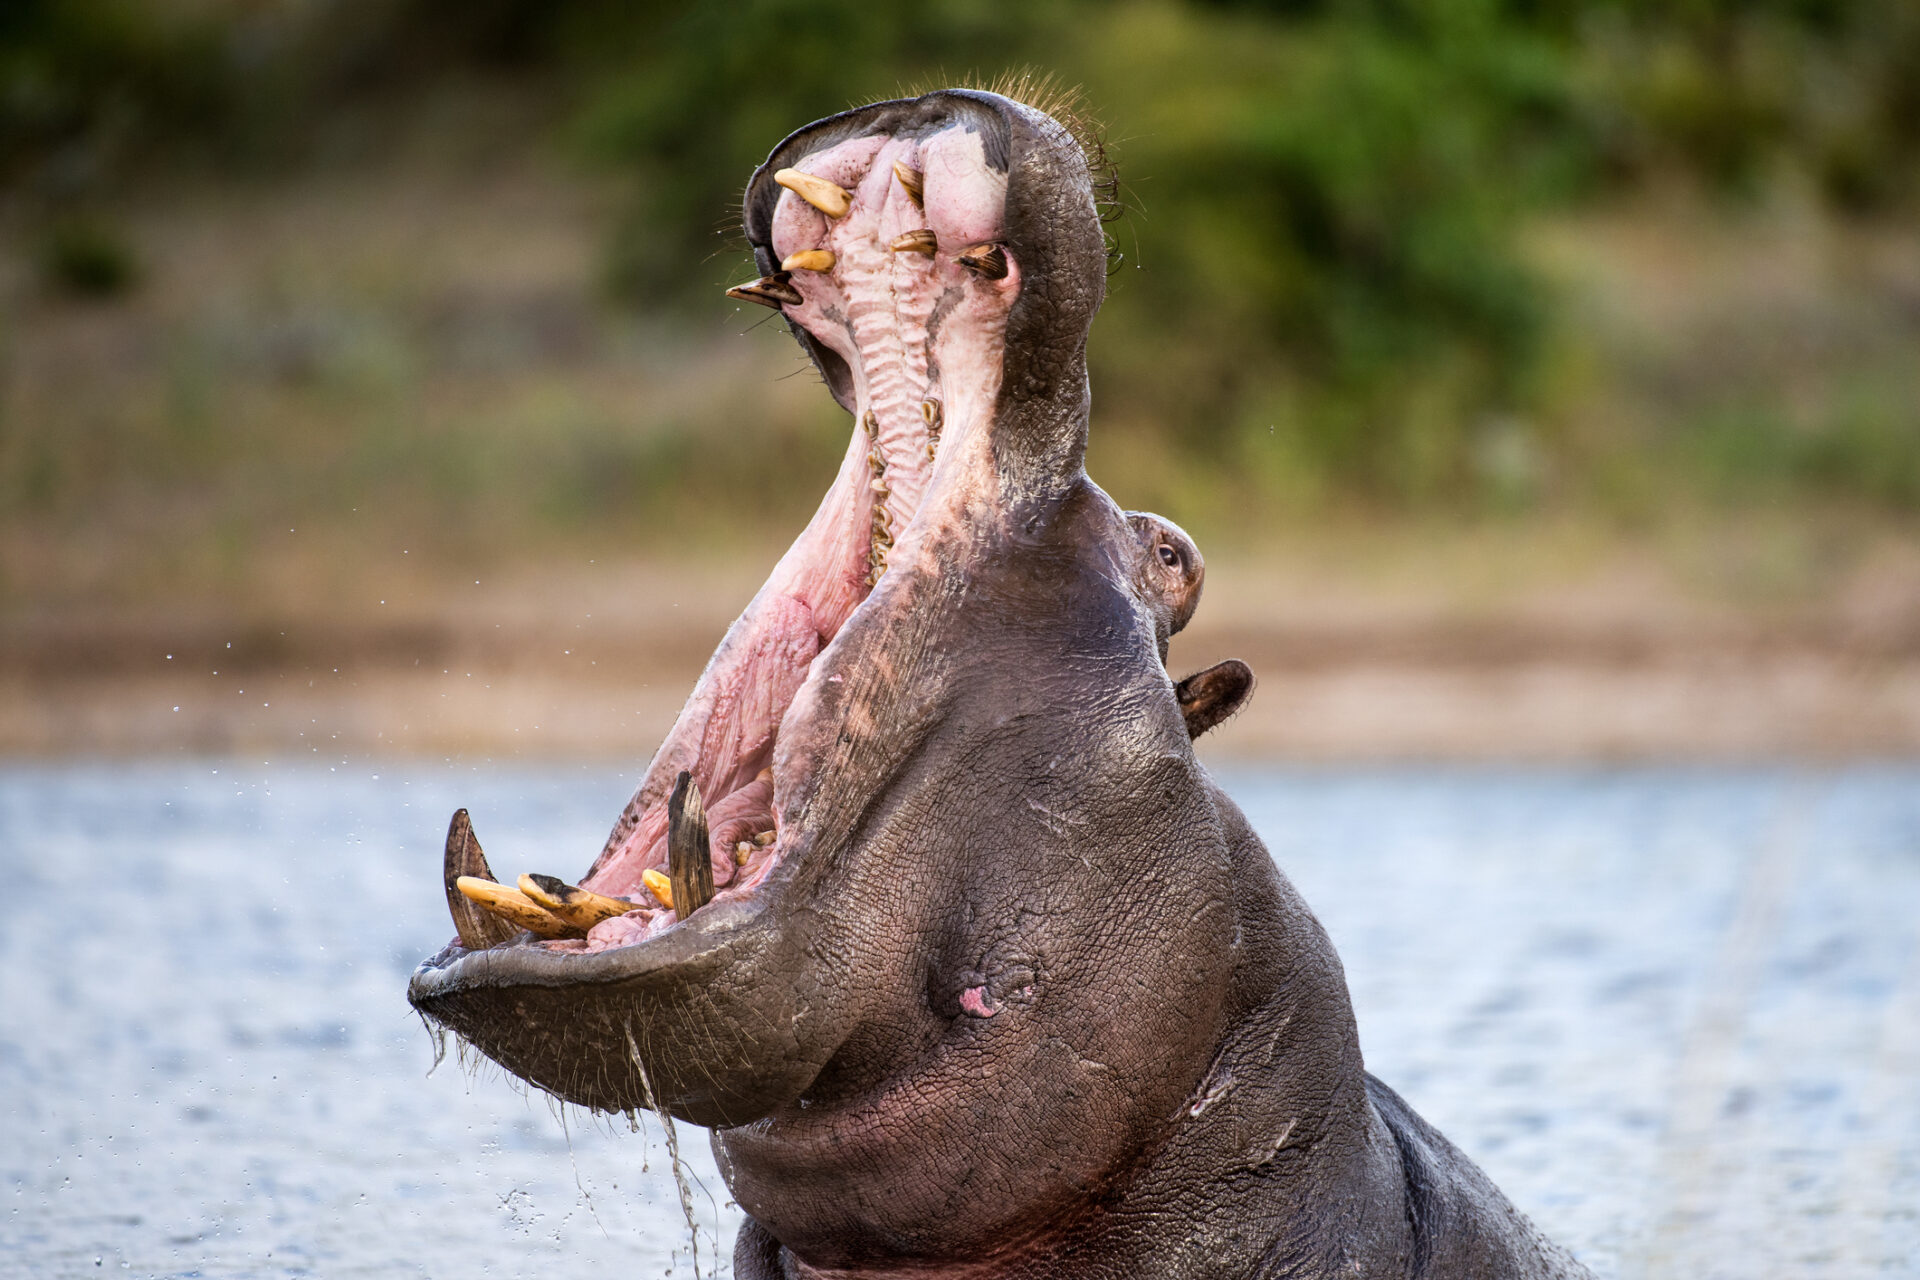 Hipopótamo se tragó a niño de dos años y lo escupió; el nene quedó vivo